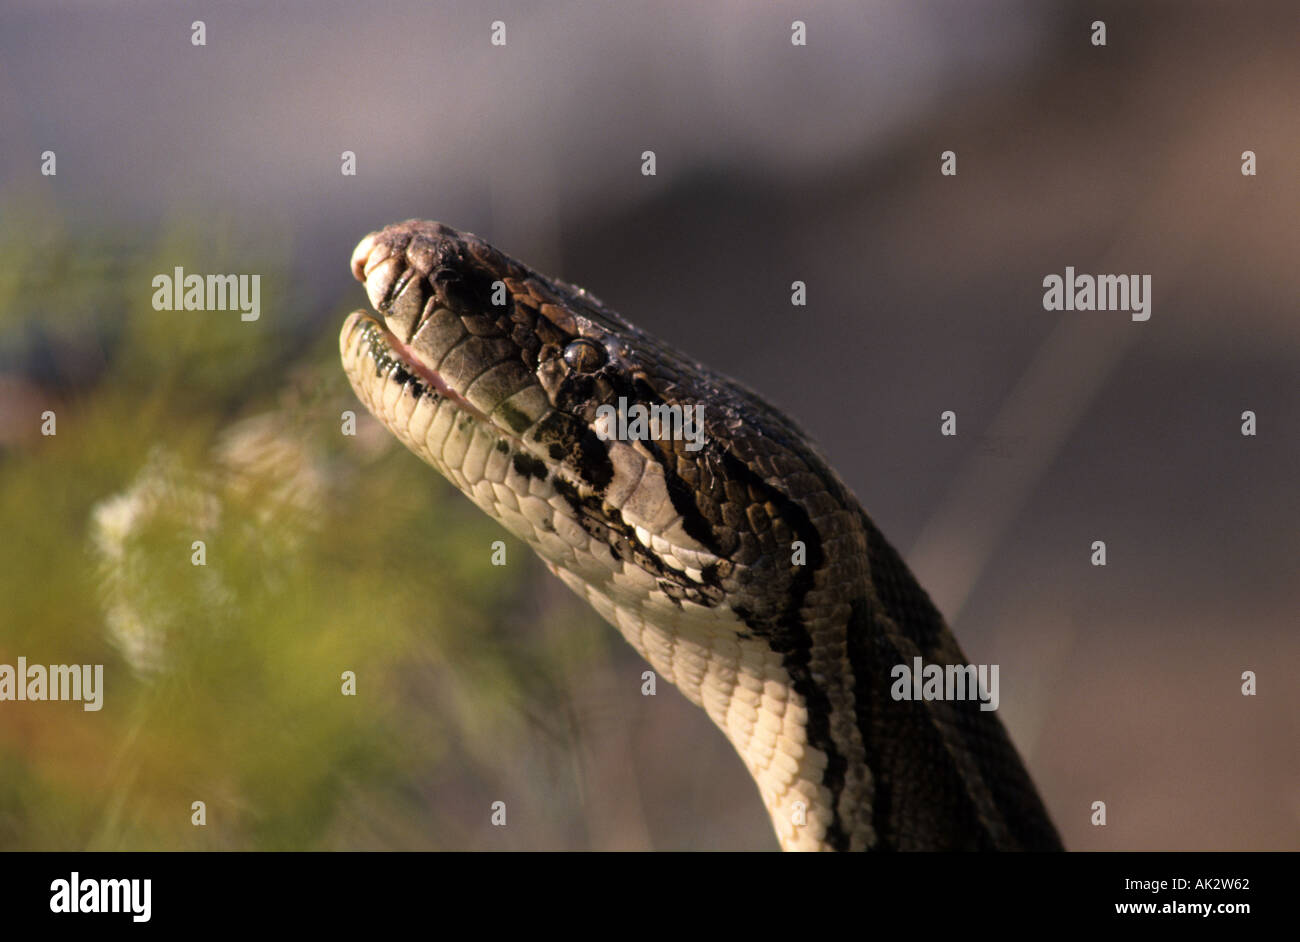 Rettile serpente Boa constrictor animali spaventosi serpente di strozzatura Foto Stock